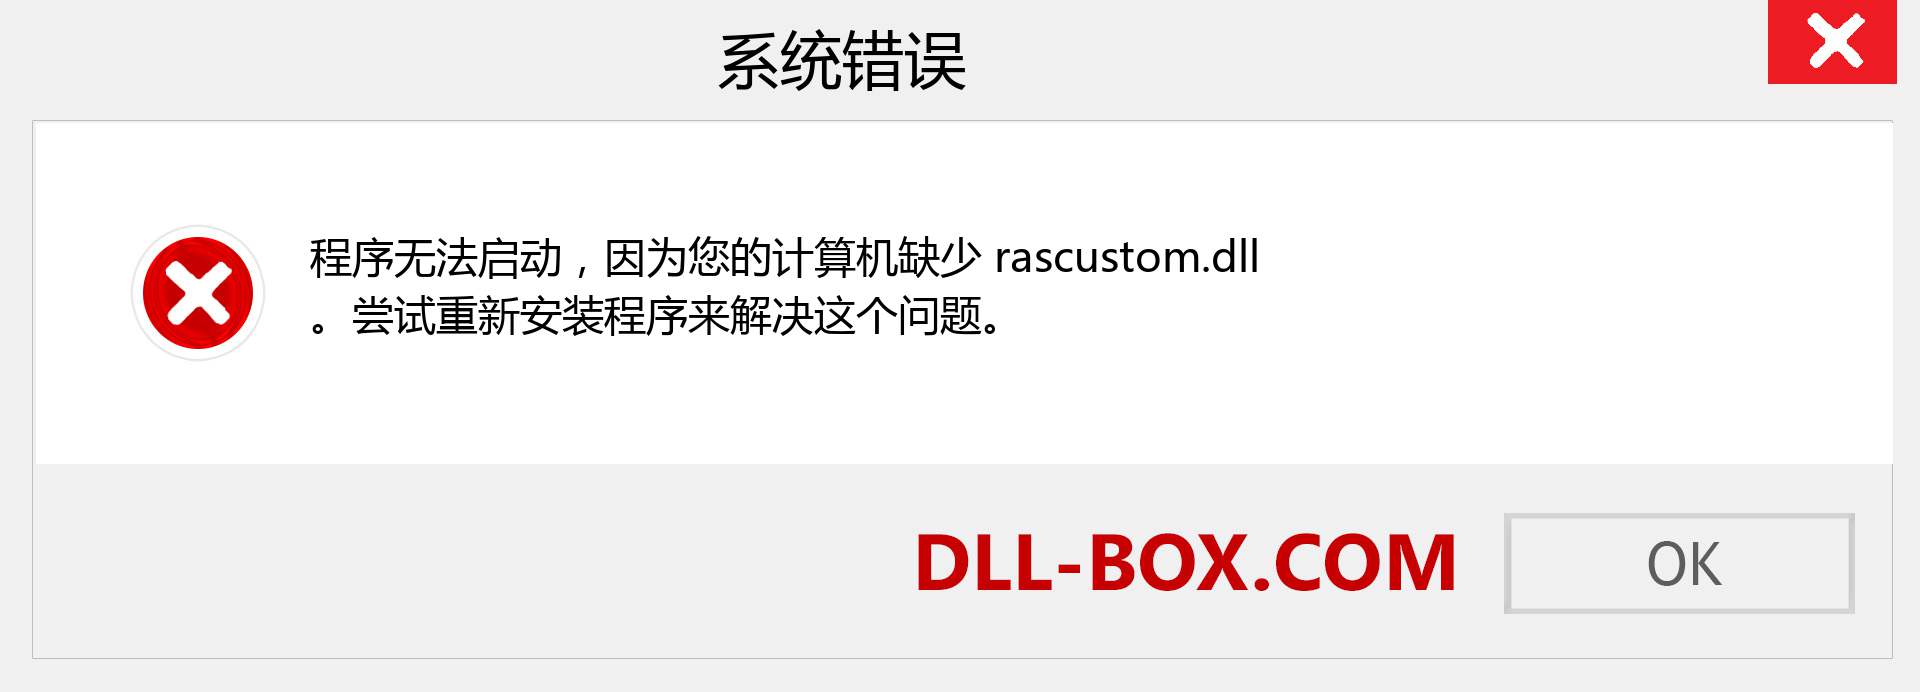 rascustom.dll 文件丢失？。 适用于 Windows 7、8、10 的下载 - 修复 Windows、照片、图像上的 rascustom dll 丢失错误